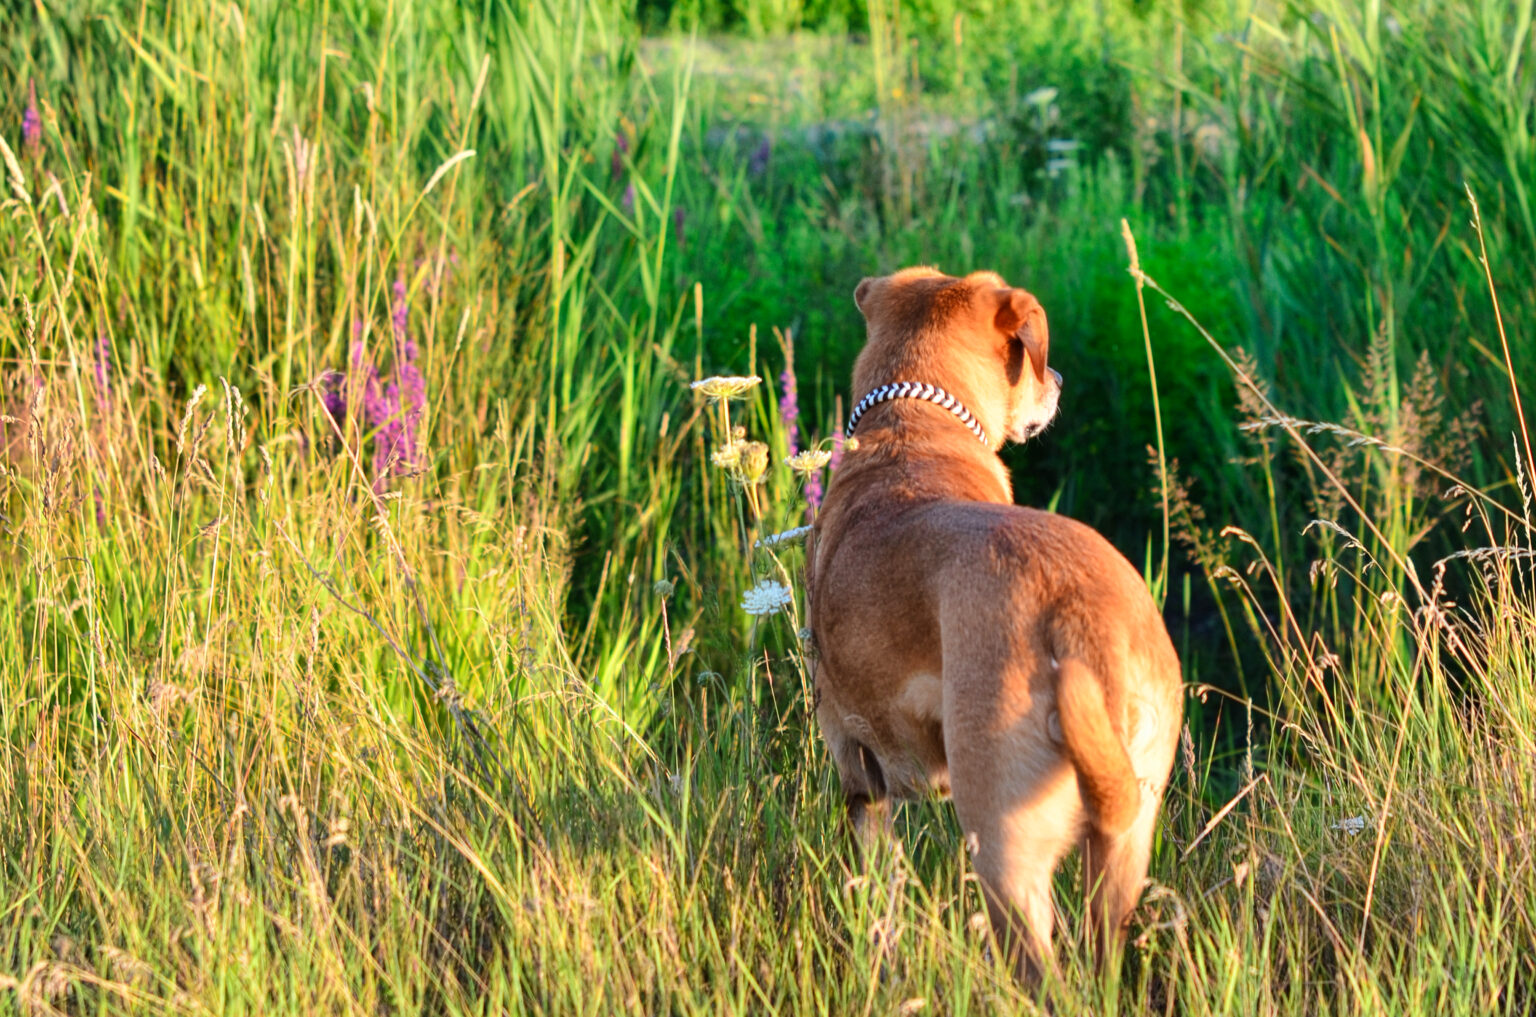 Der Bunte Pfeffer ist aufgrund seiner geringen Breite vor allem für leinenführige Hunde ein zuverlässiger Begleiter.